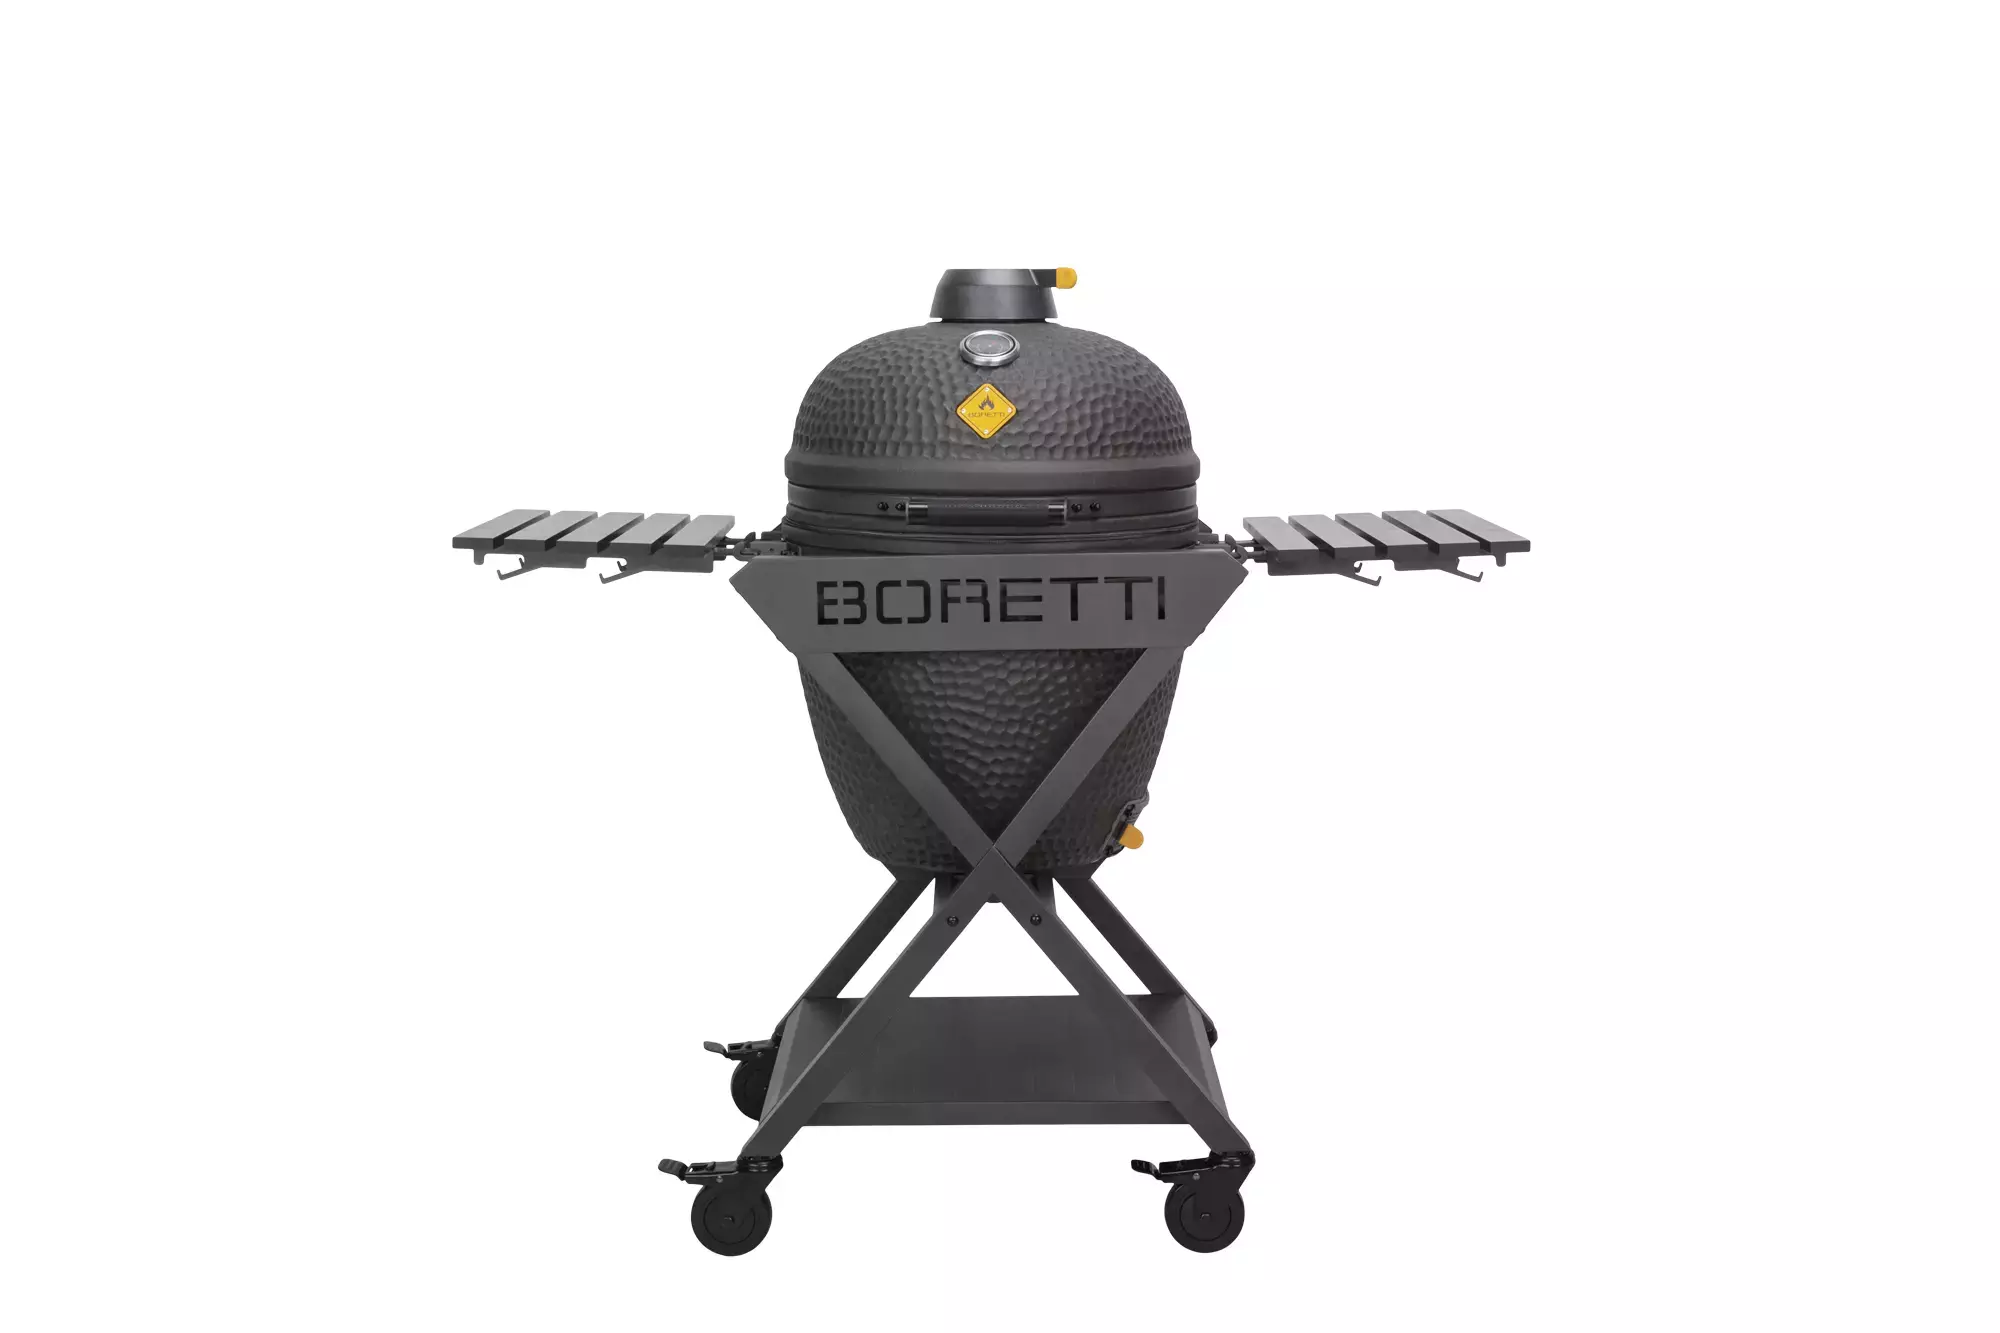 De lucht blootstelling het dossier Boretti bbq kopen | Bestel goedkoop een Boretti barbecue - Bbq-zaak.nl